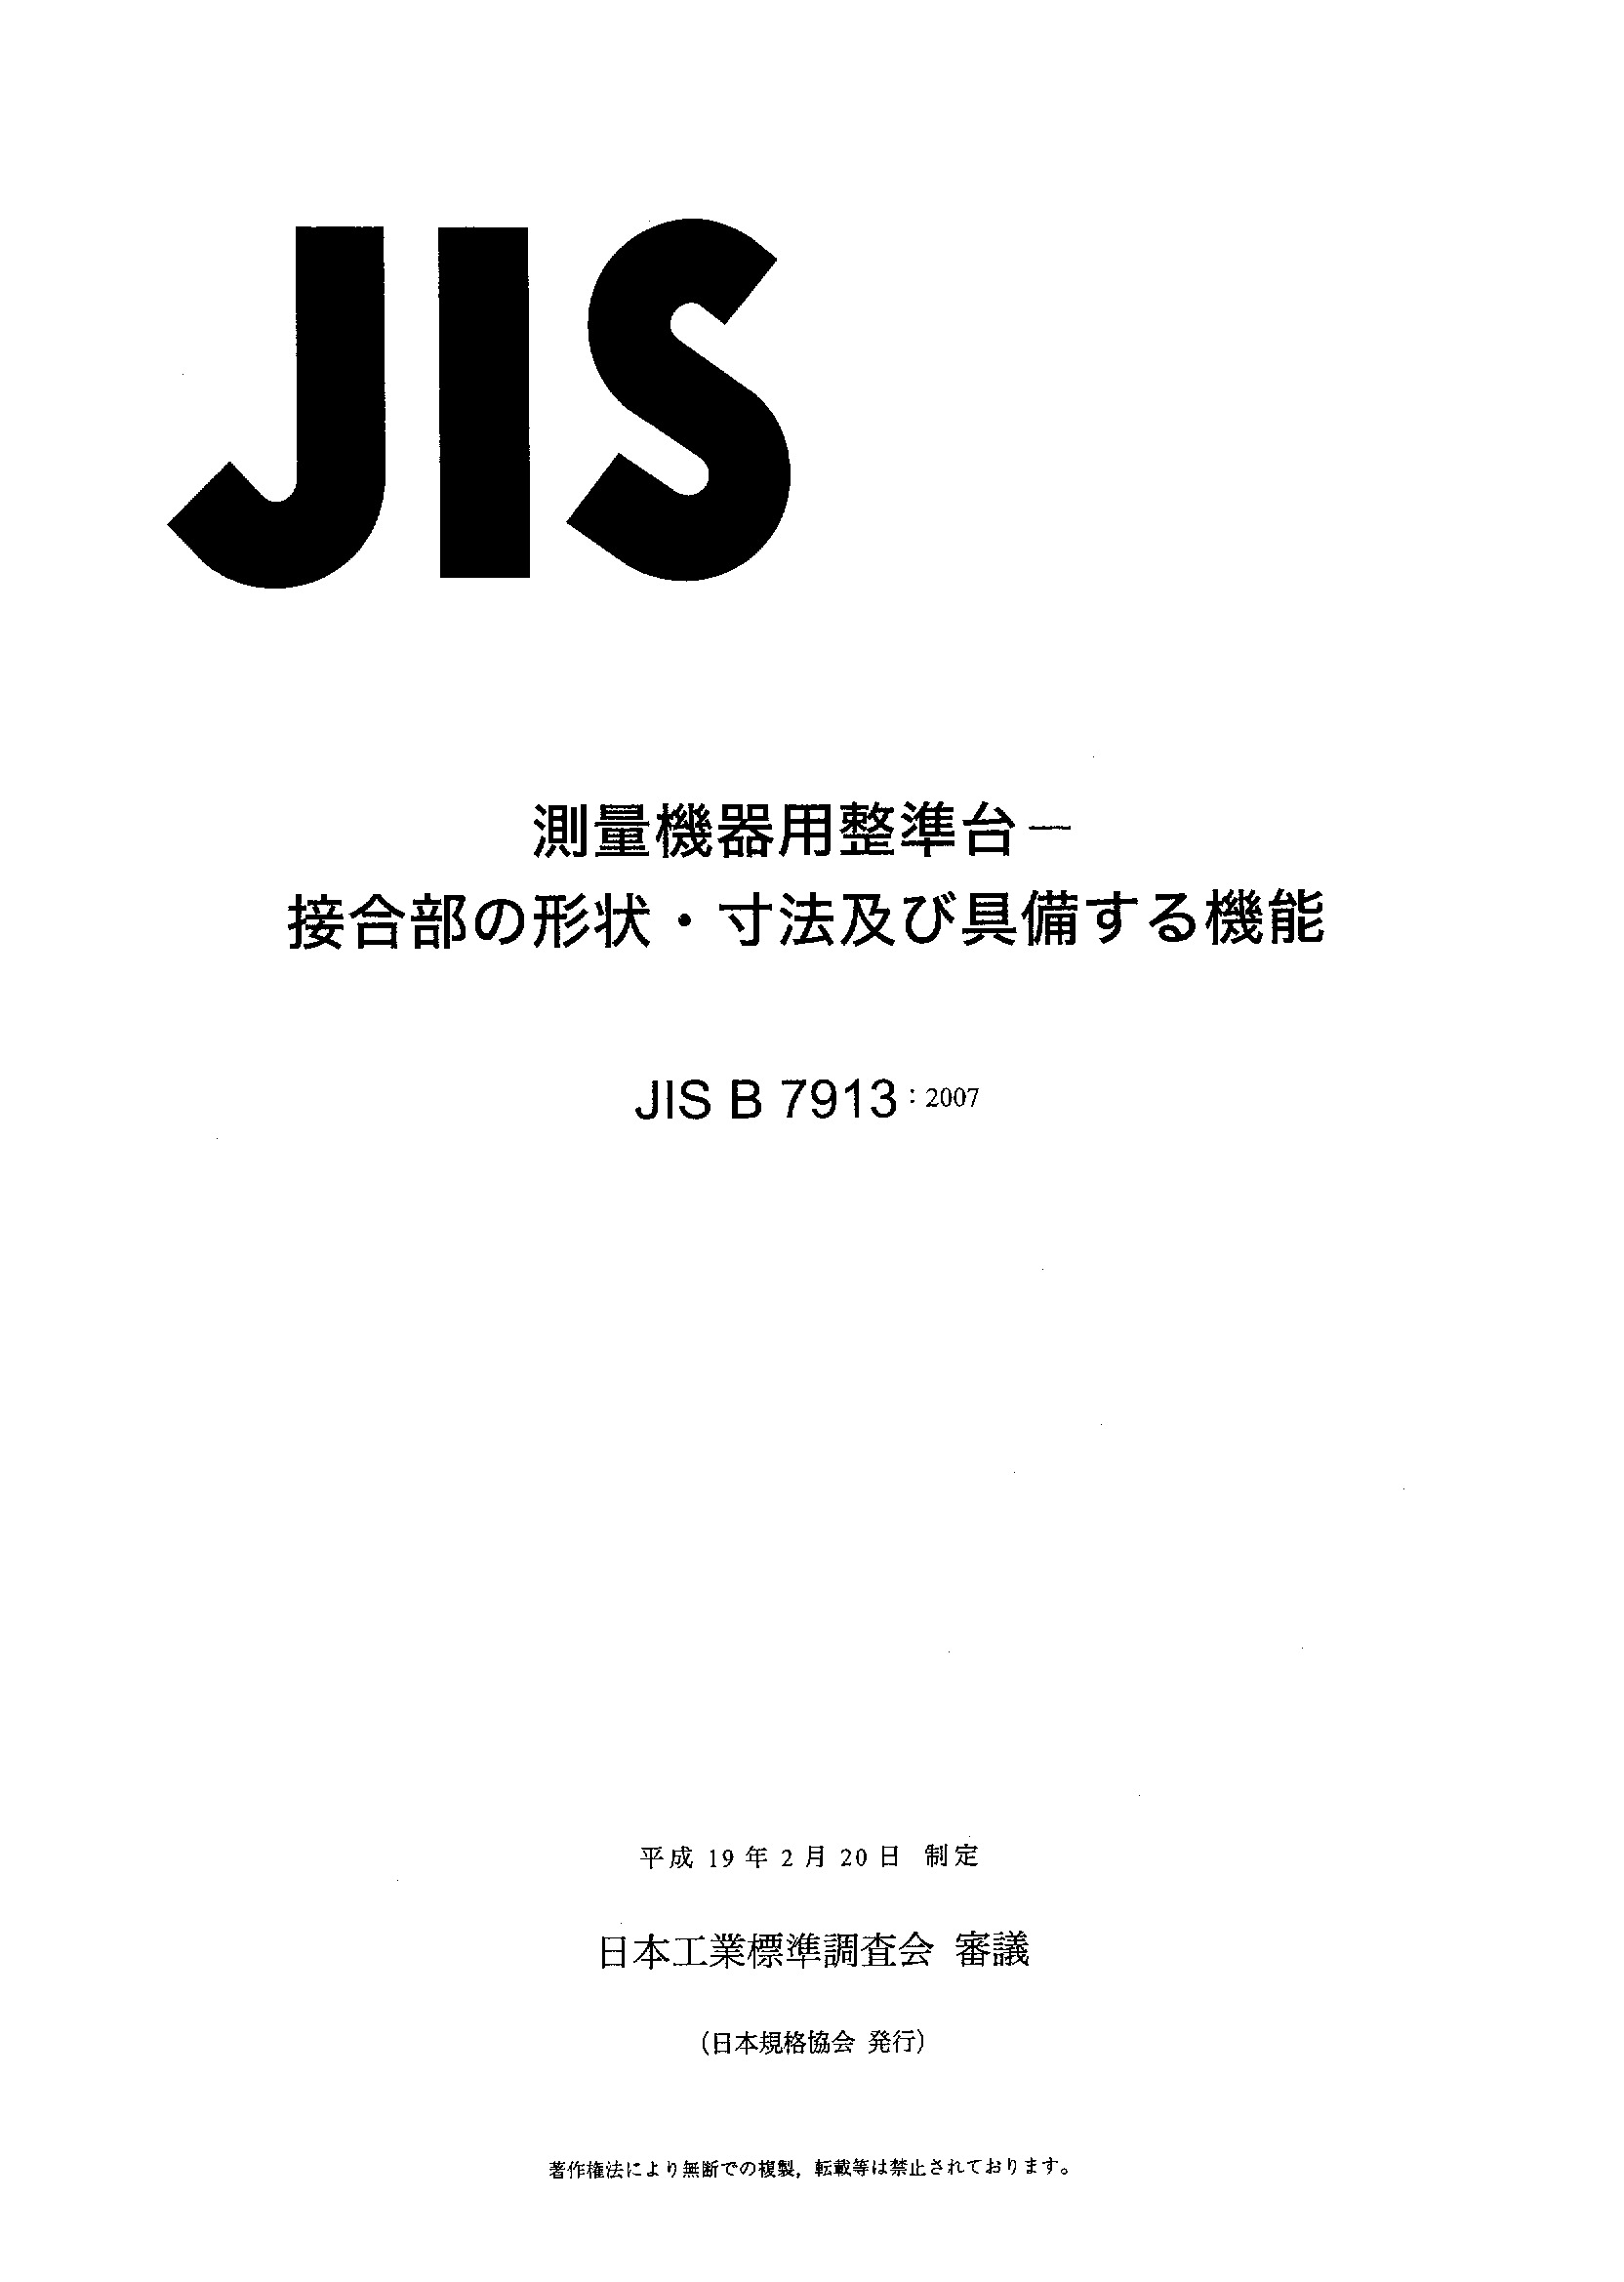 JIS B 7913:2007封面图